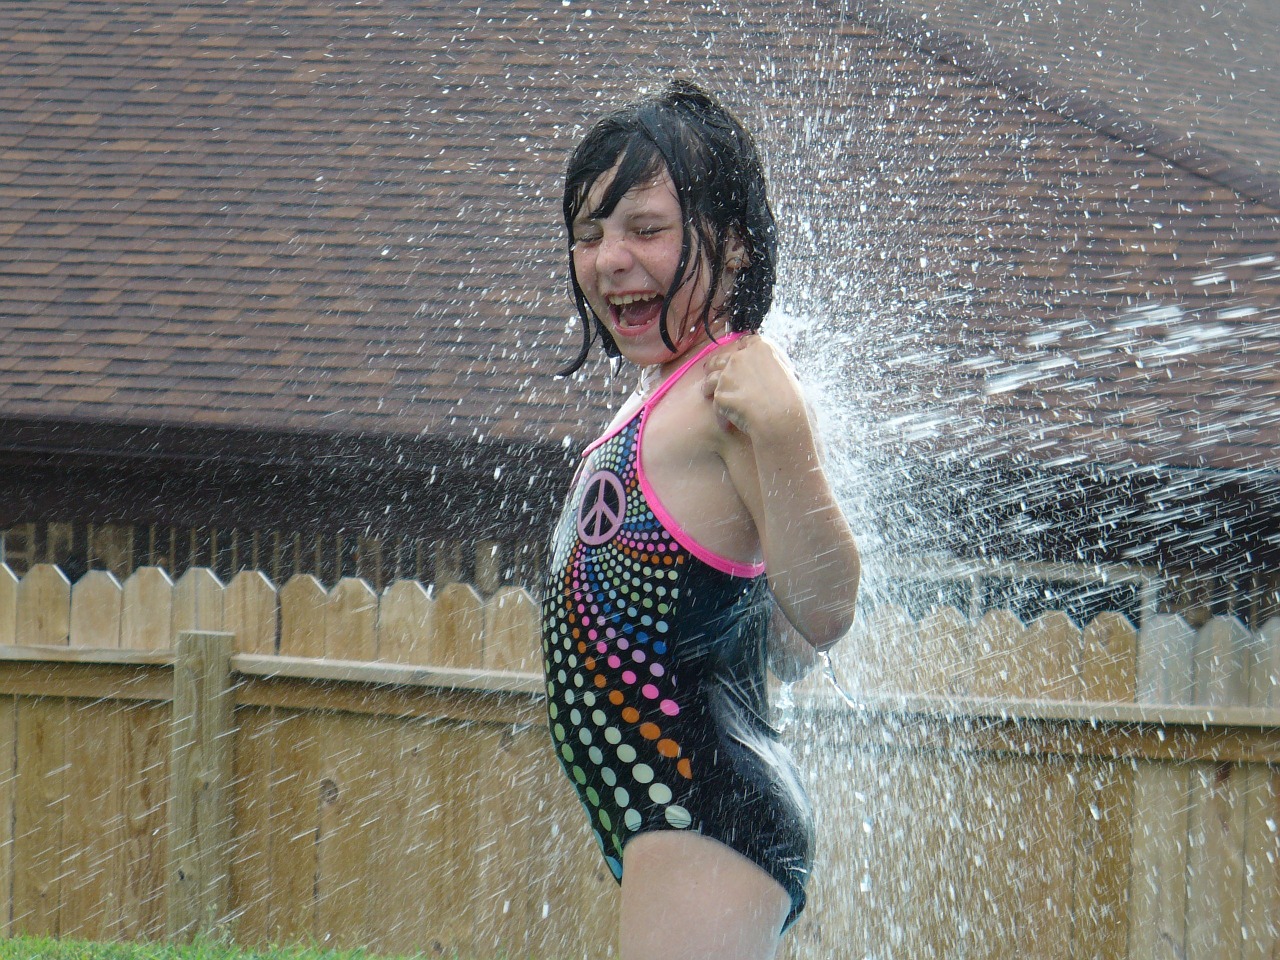 water splash hose fun free photo